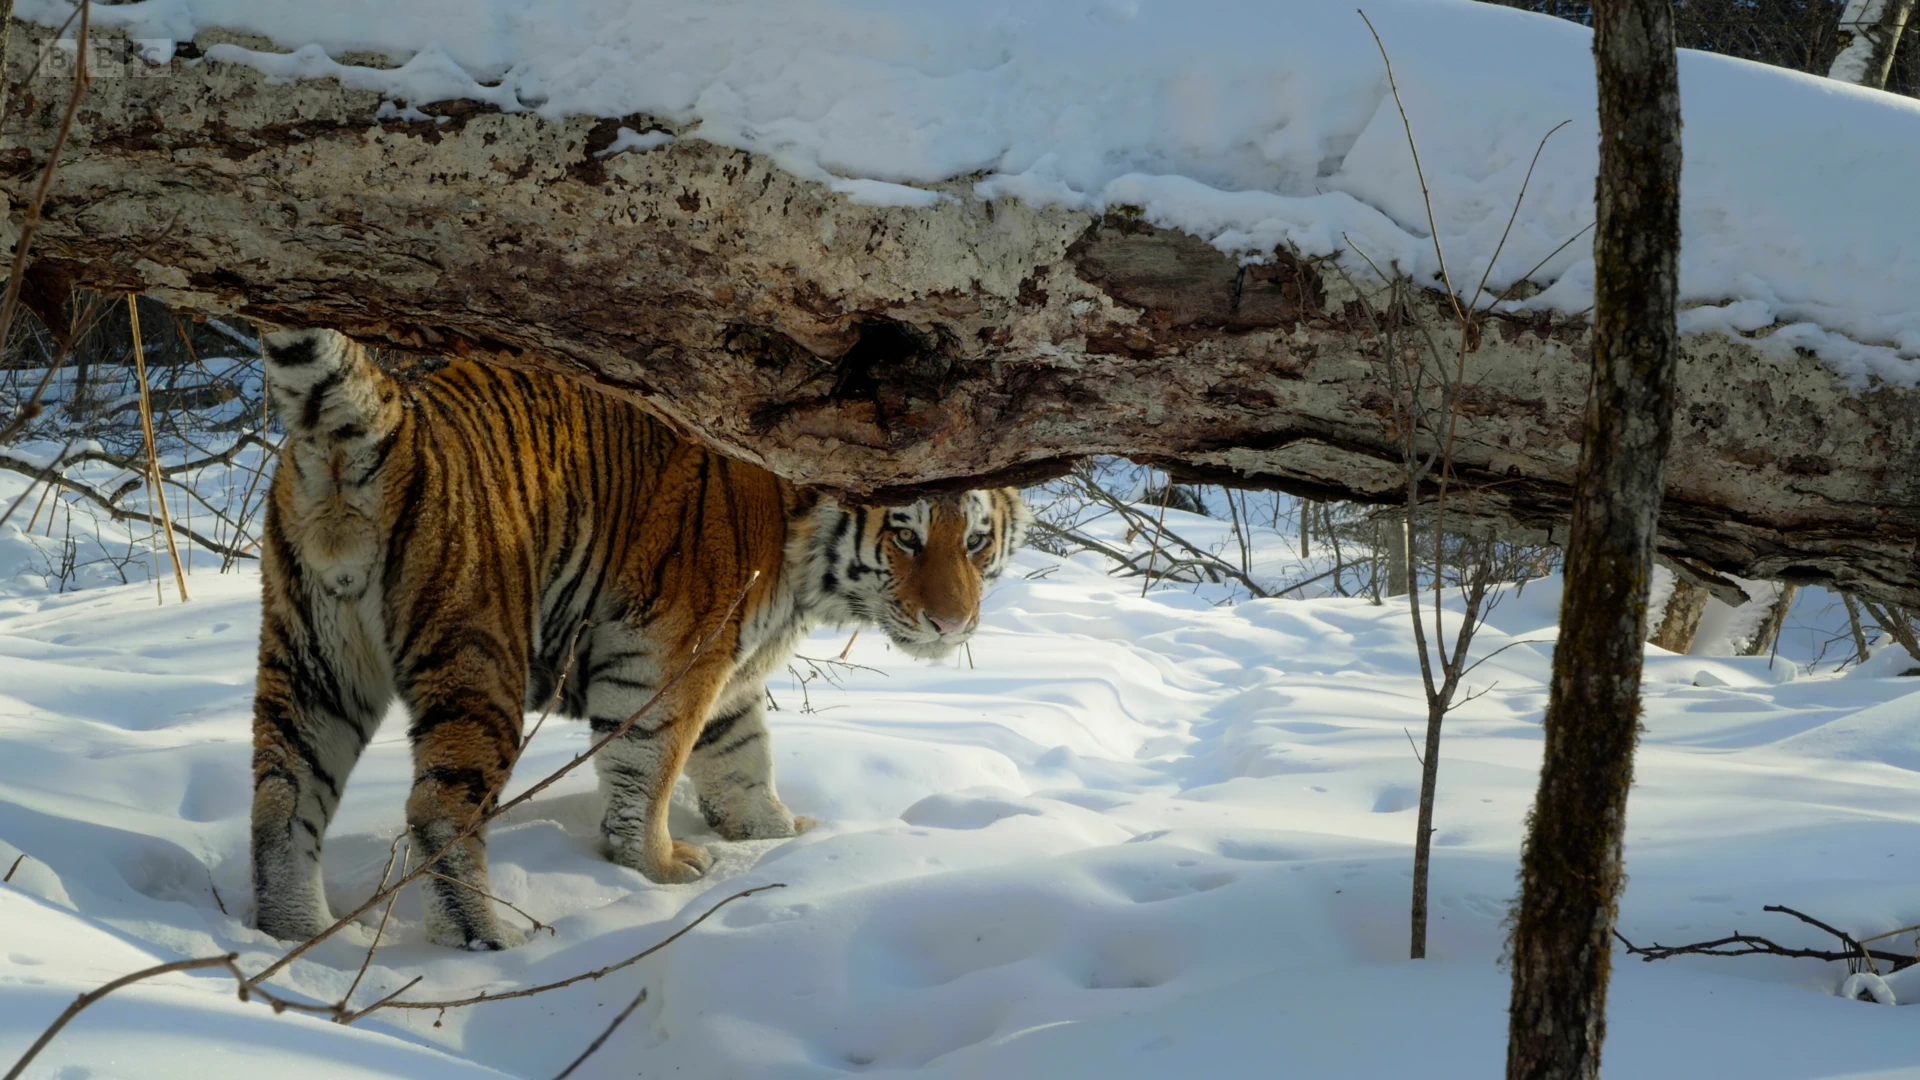 Siberian tiger (Panthera tigris tigris) as shown in Frozen Planet II - Frozen Worlds